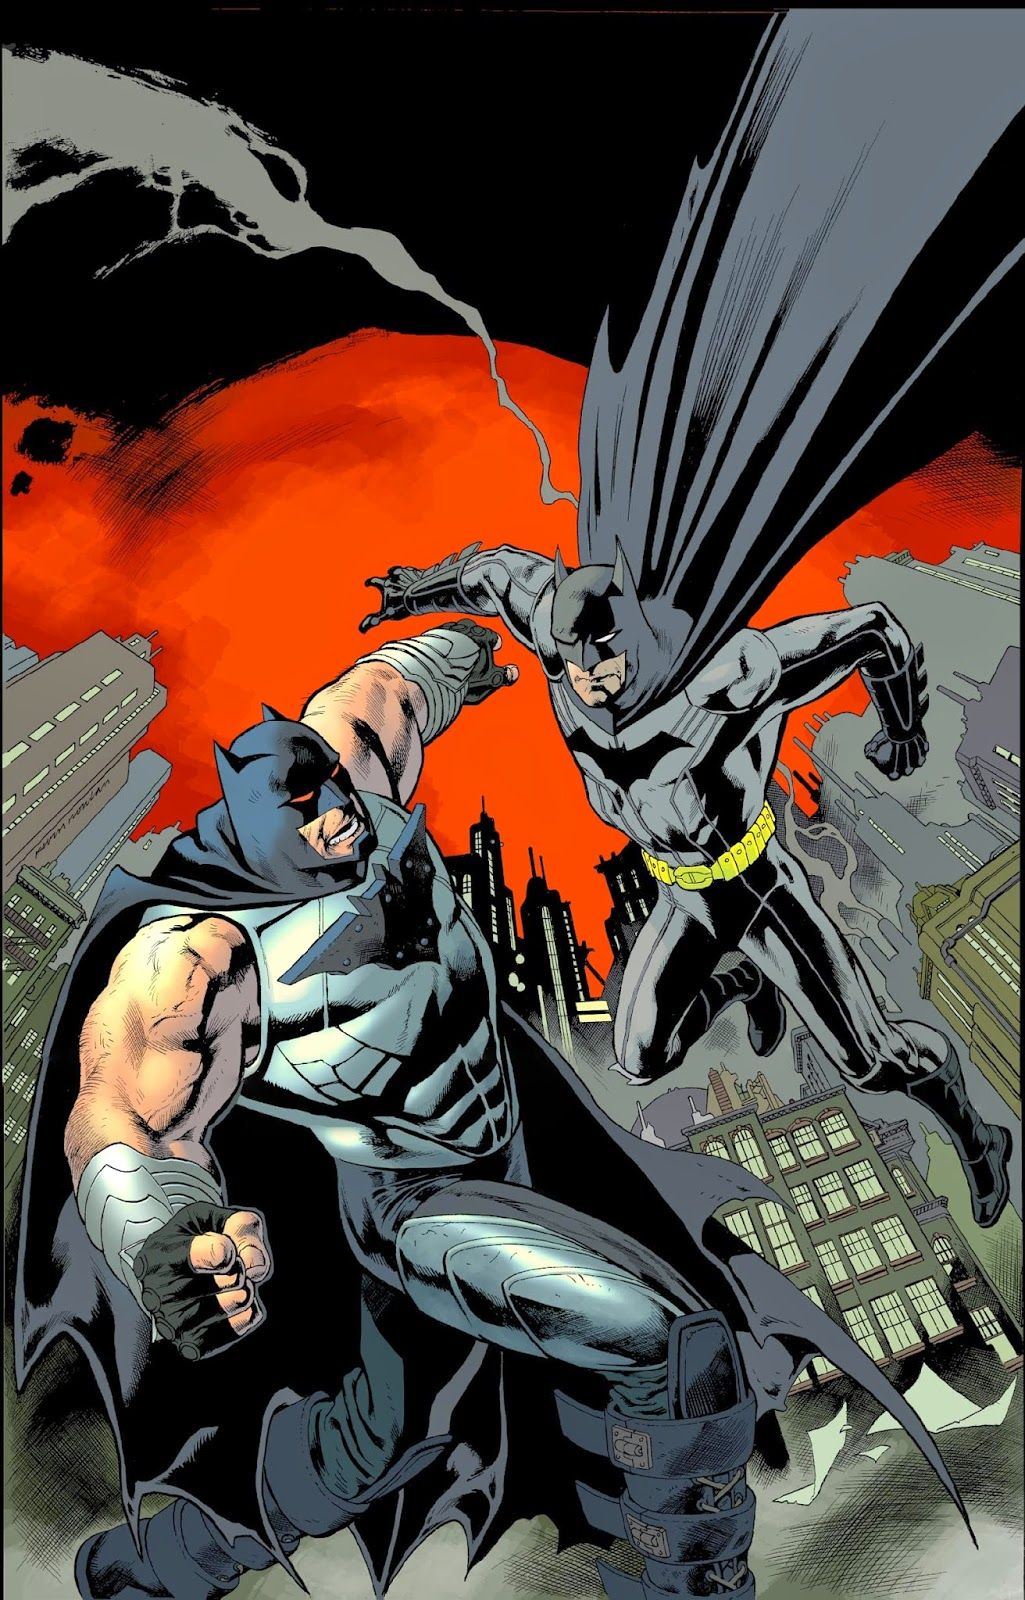 Forever Evil Aftermath: Batman Vs. Bane wallpaper, Comics, HQ Forever Evil Aftermath: Batman Vs. Bane pictureK Wallpaper 2019